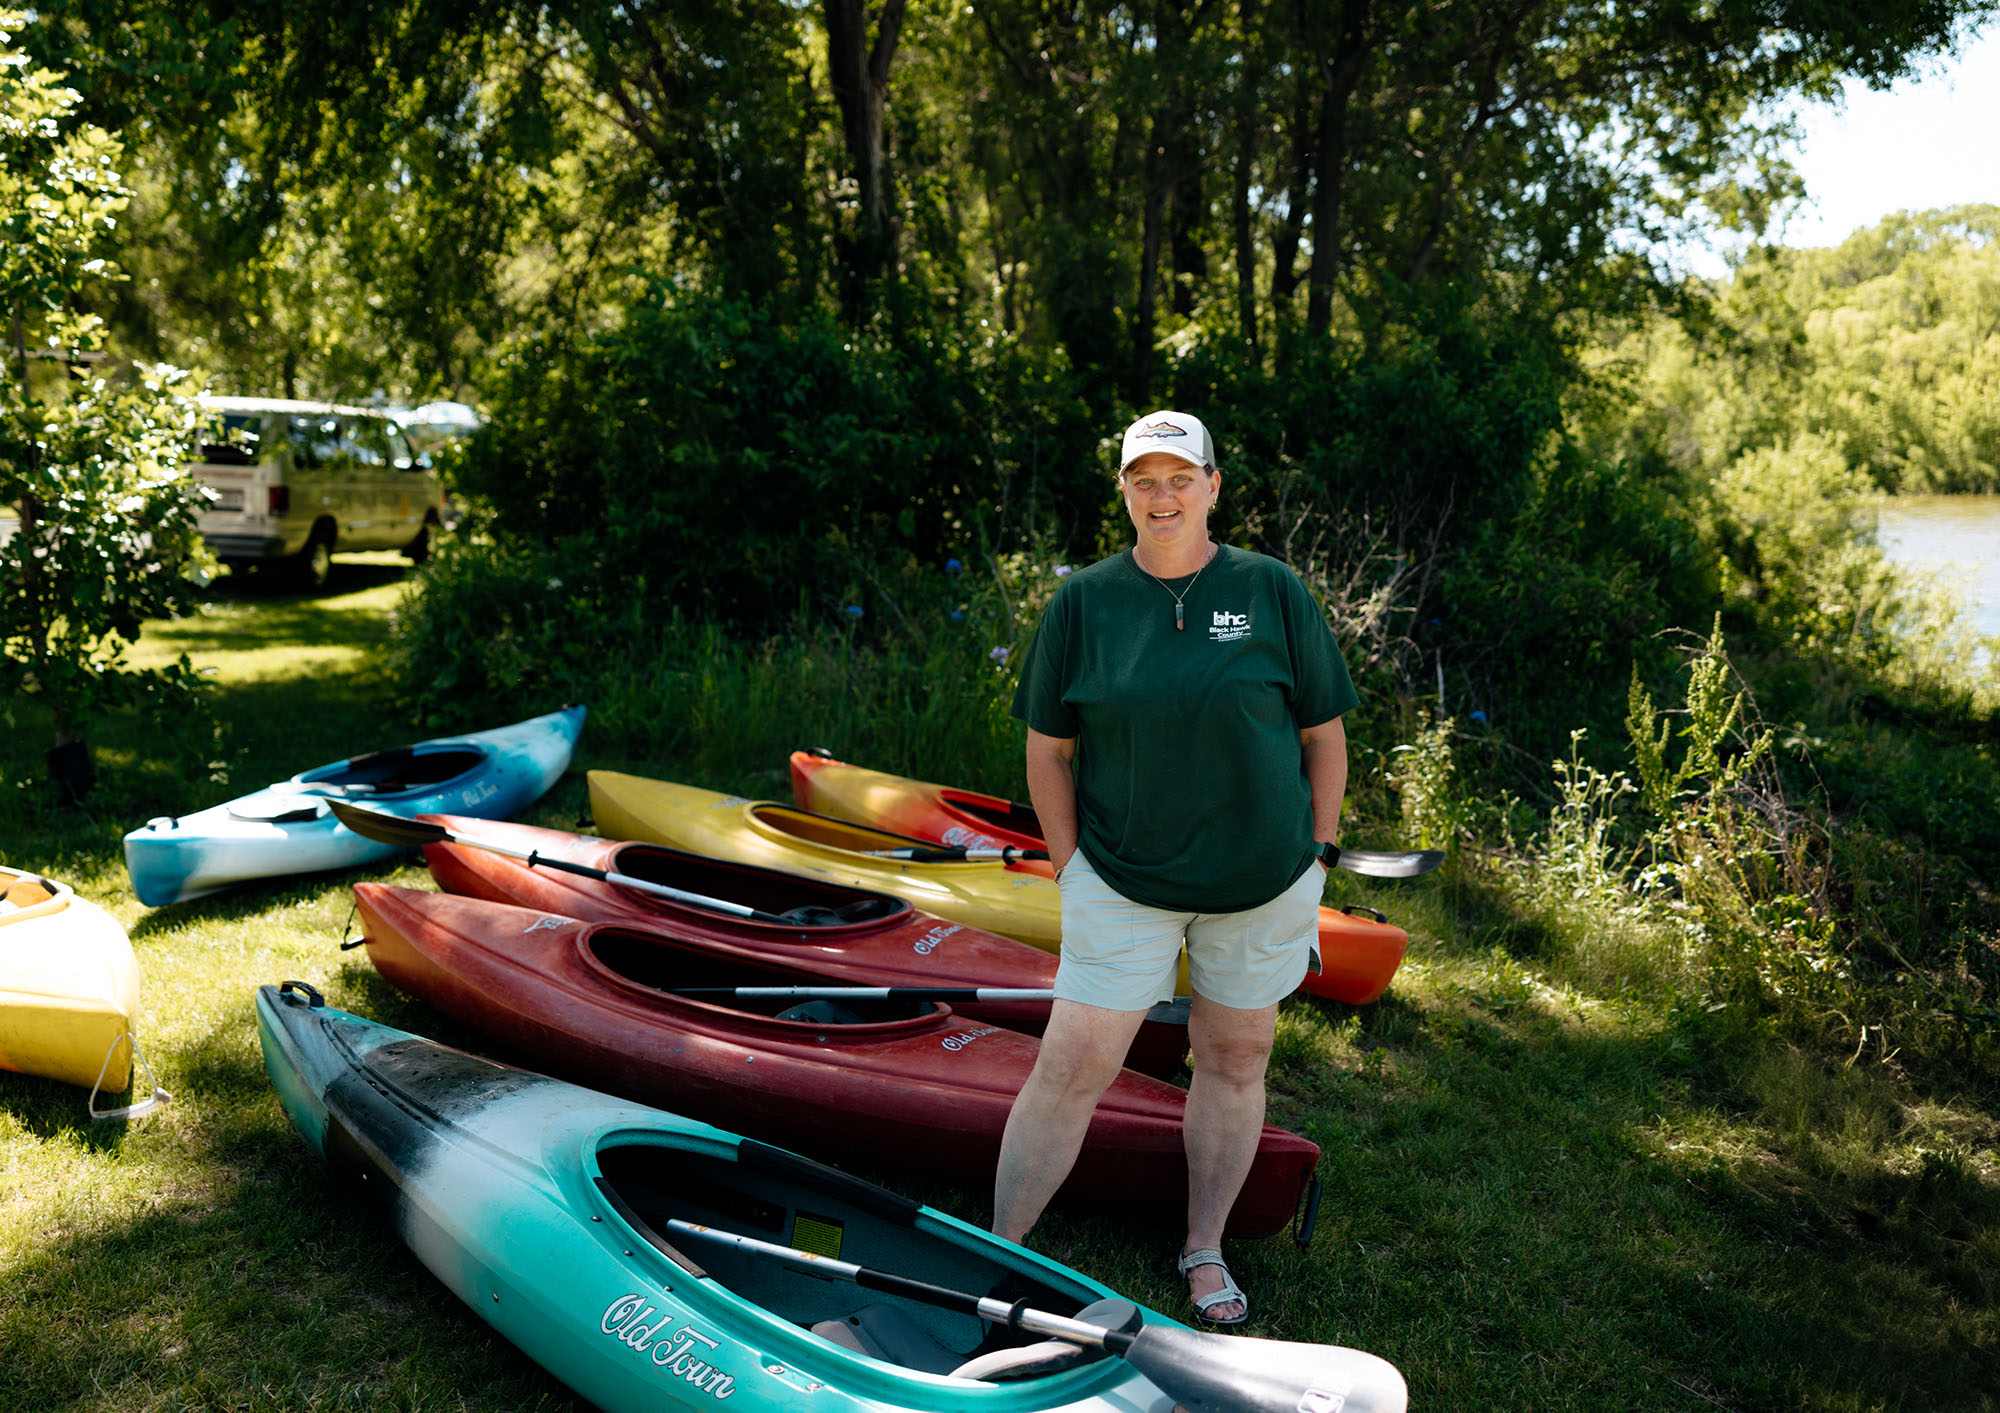 Amy Davison with Kayaks at Big Woods Lake